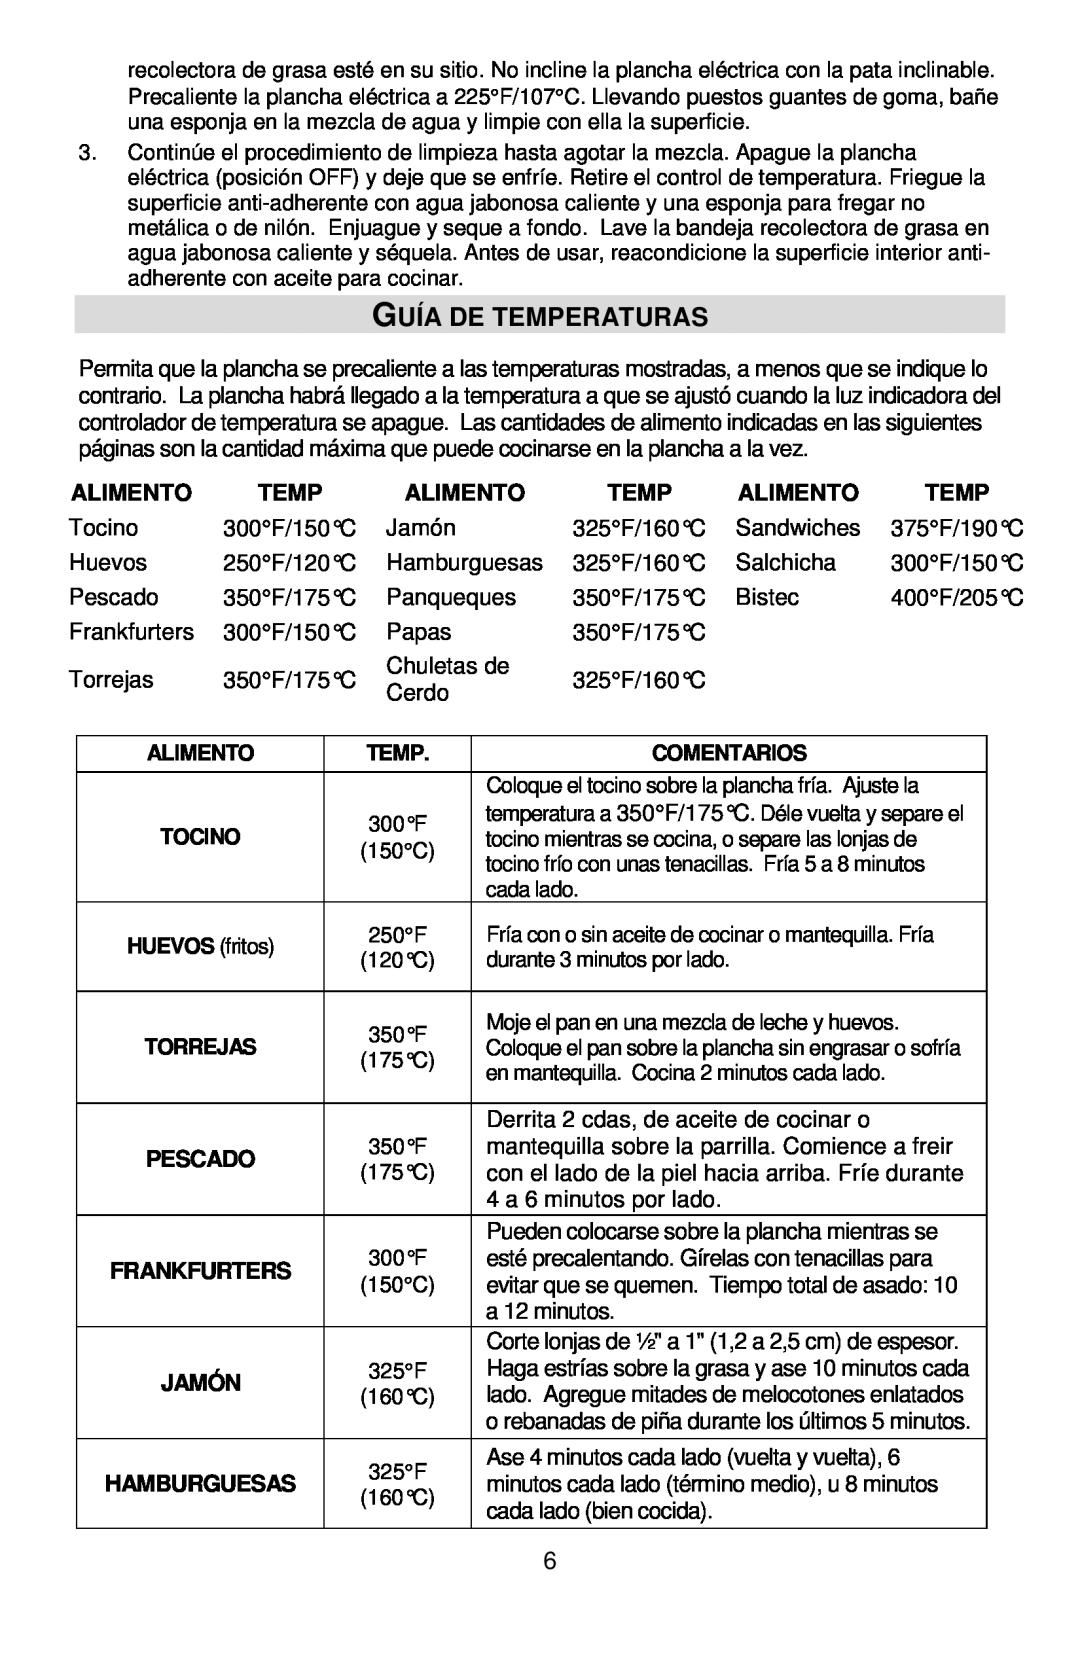 West Bend L5788, 76225 manual Guía De Temperaturas 